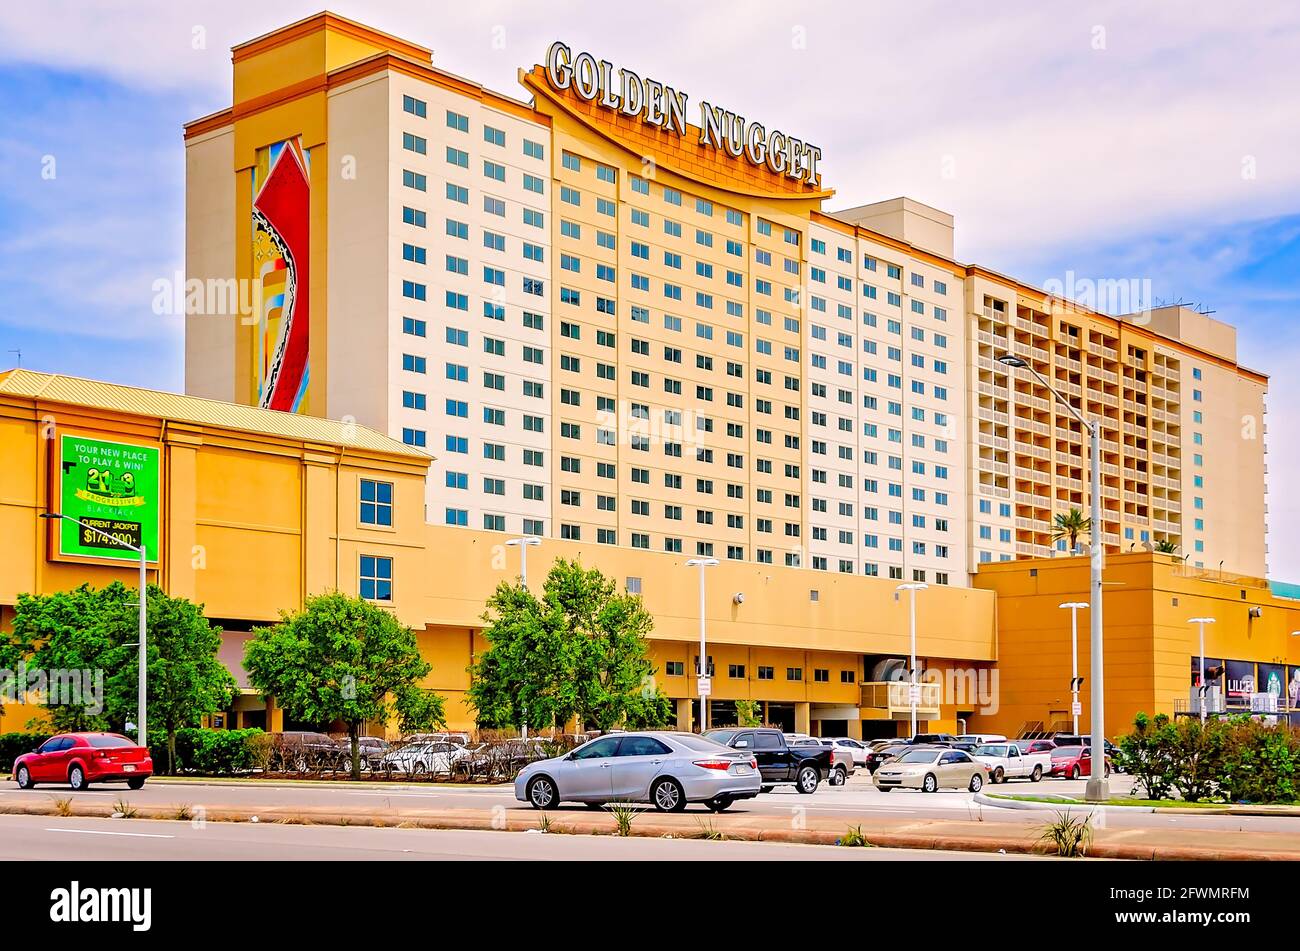 Golden Nugget Casino est photographié, le 22 mai 2021, à Biloxi, Mississippi. Banque D'Images